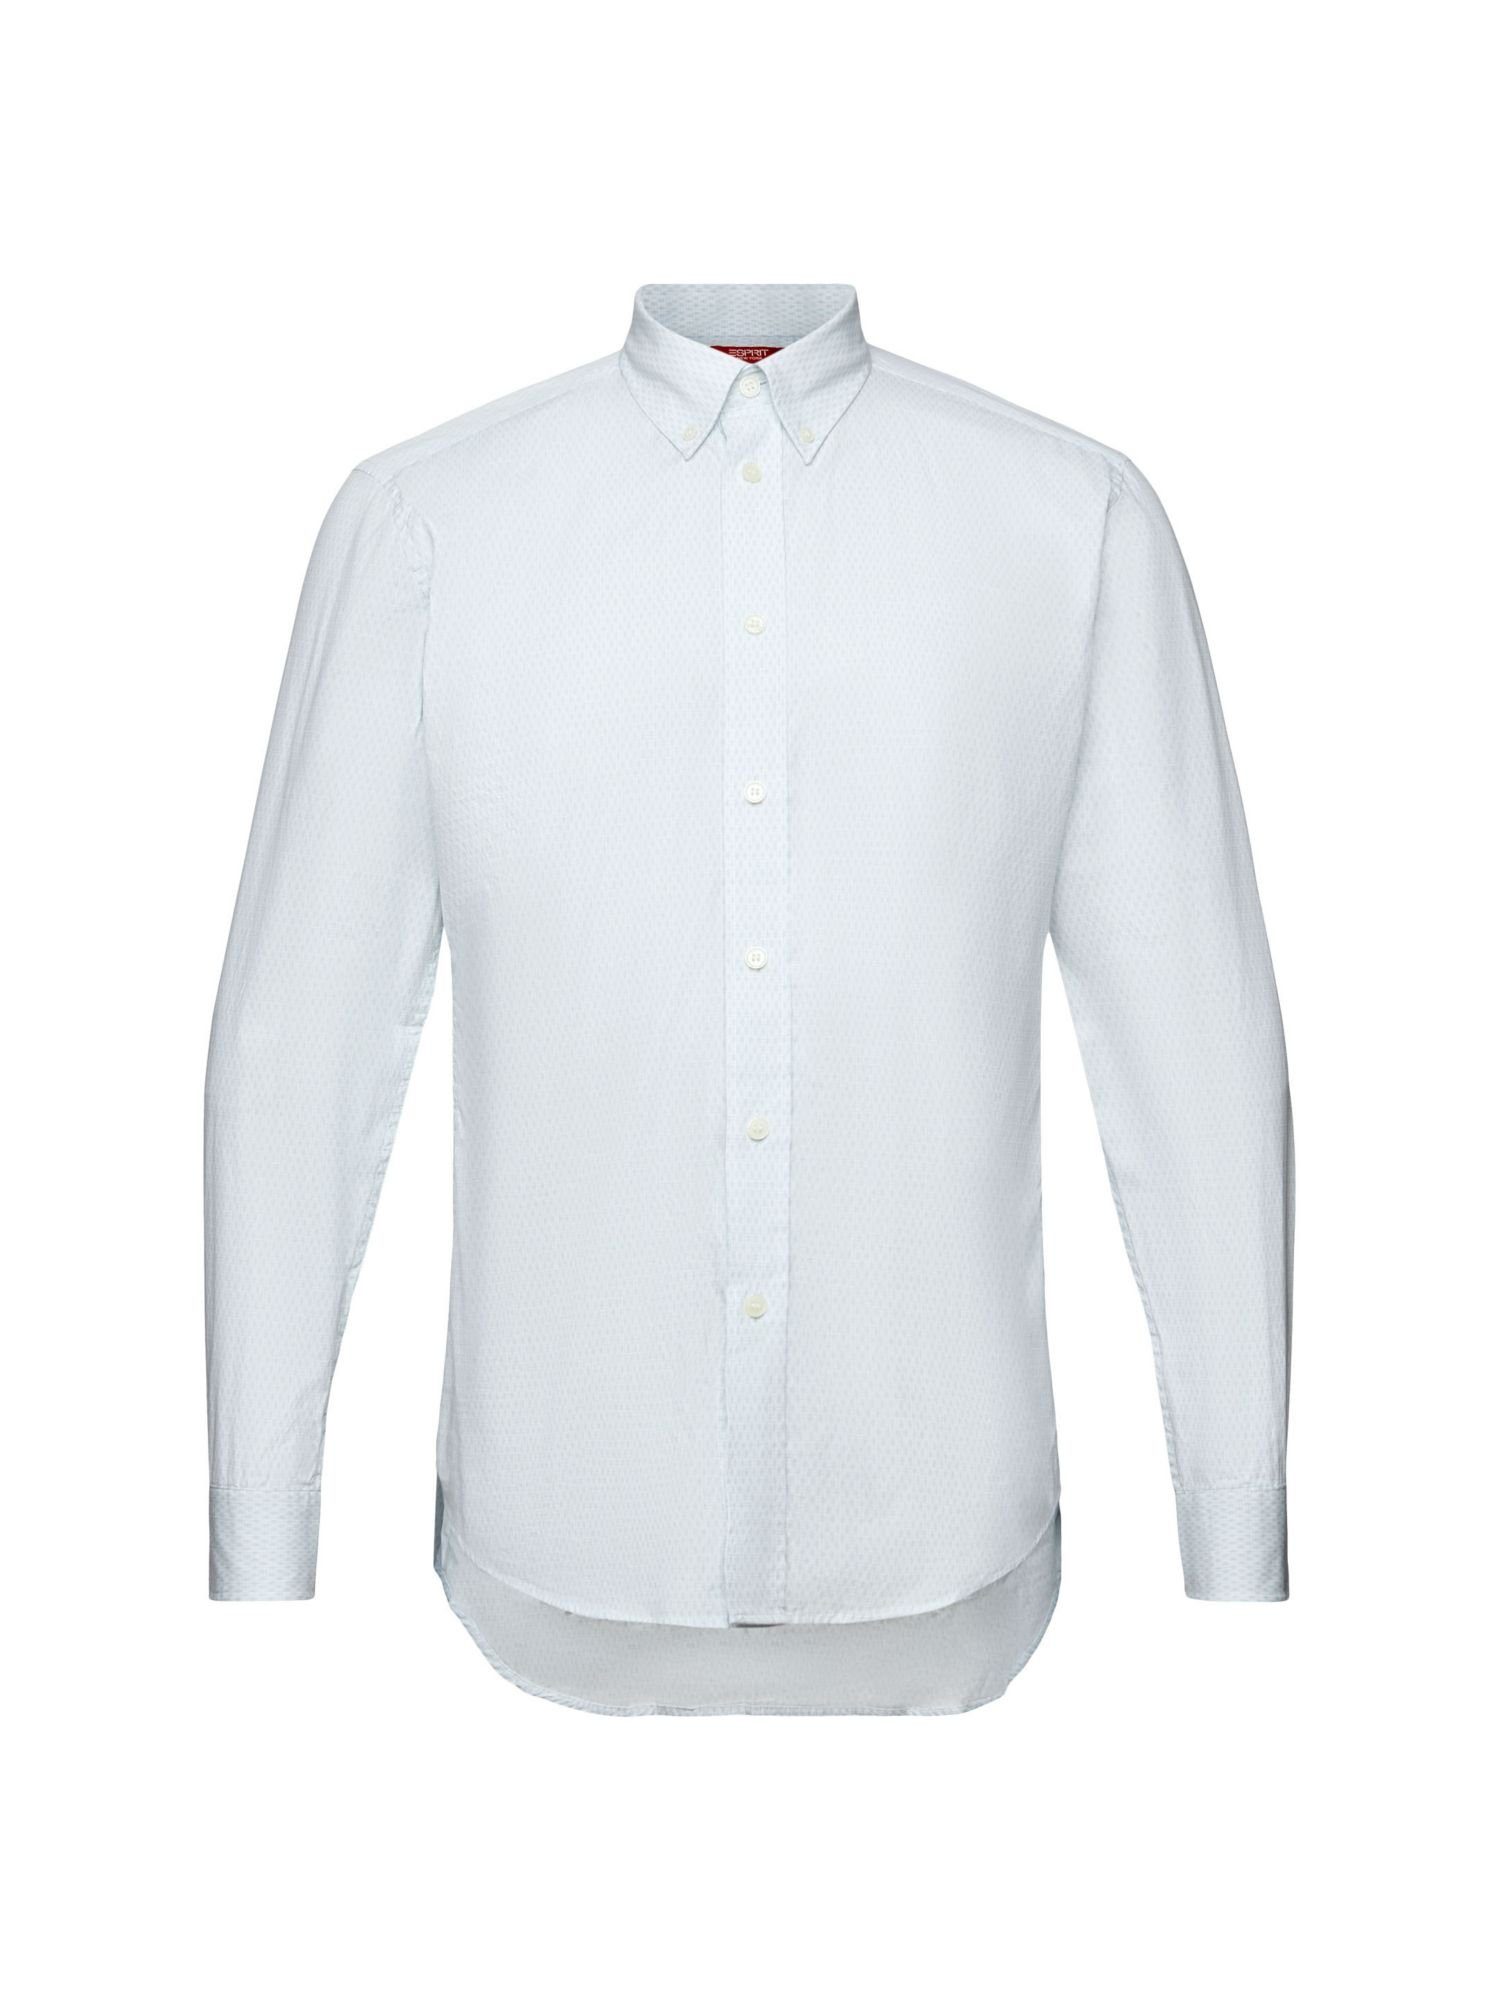 Esprit Collection Businesshemd Baumwollhemd mit Print in bequemer Passform WHITE